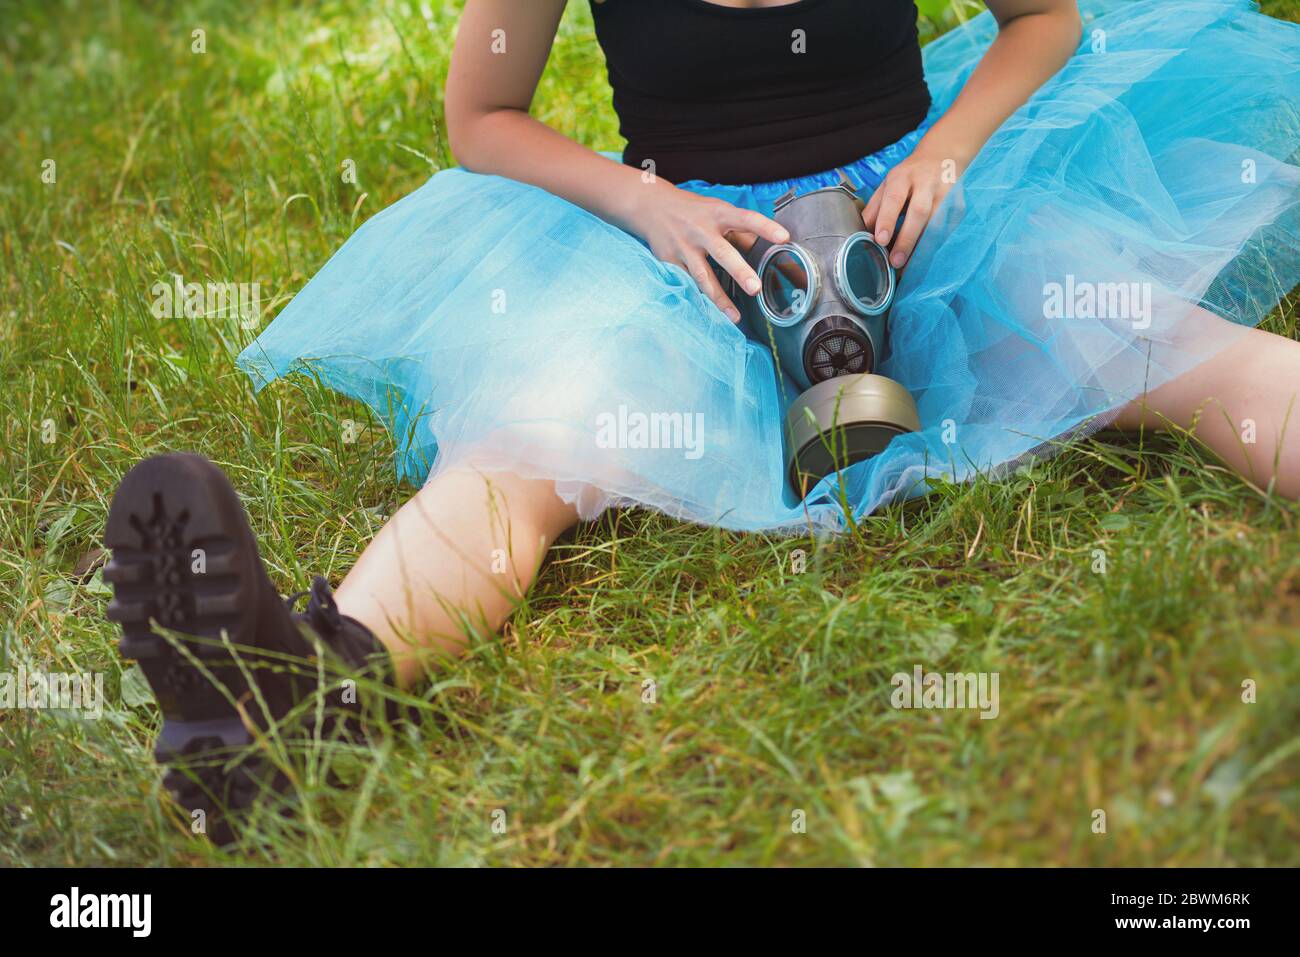 Donna in gonna blu con maschera a gas si siede su erba verde. Protezione ambientale, rischio biologico e concetto ecologico Foto Stock